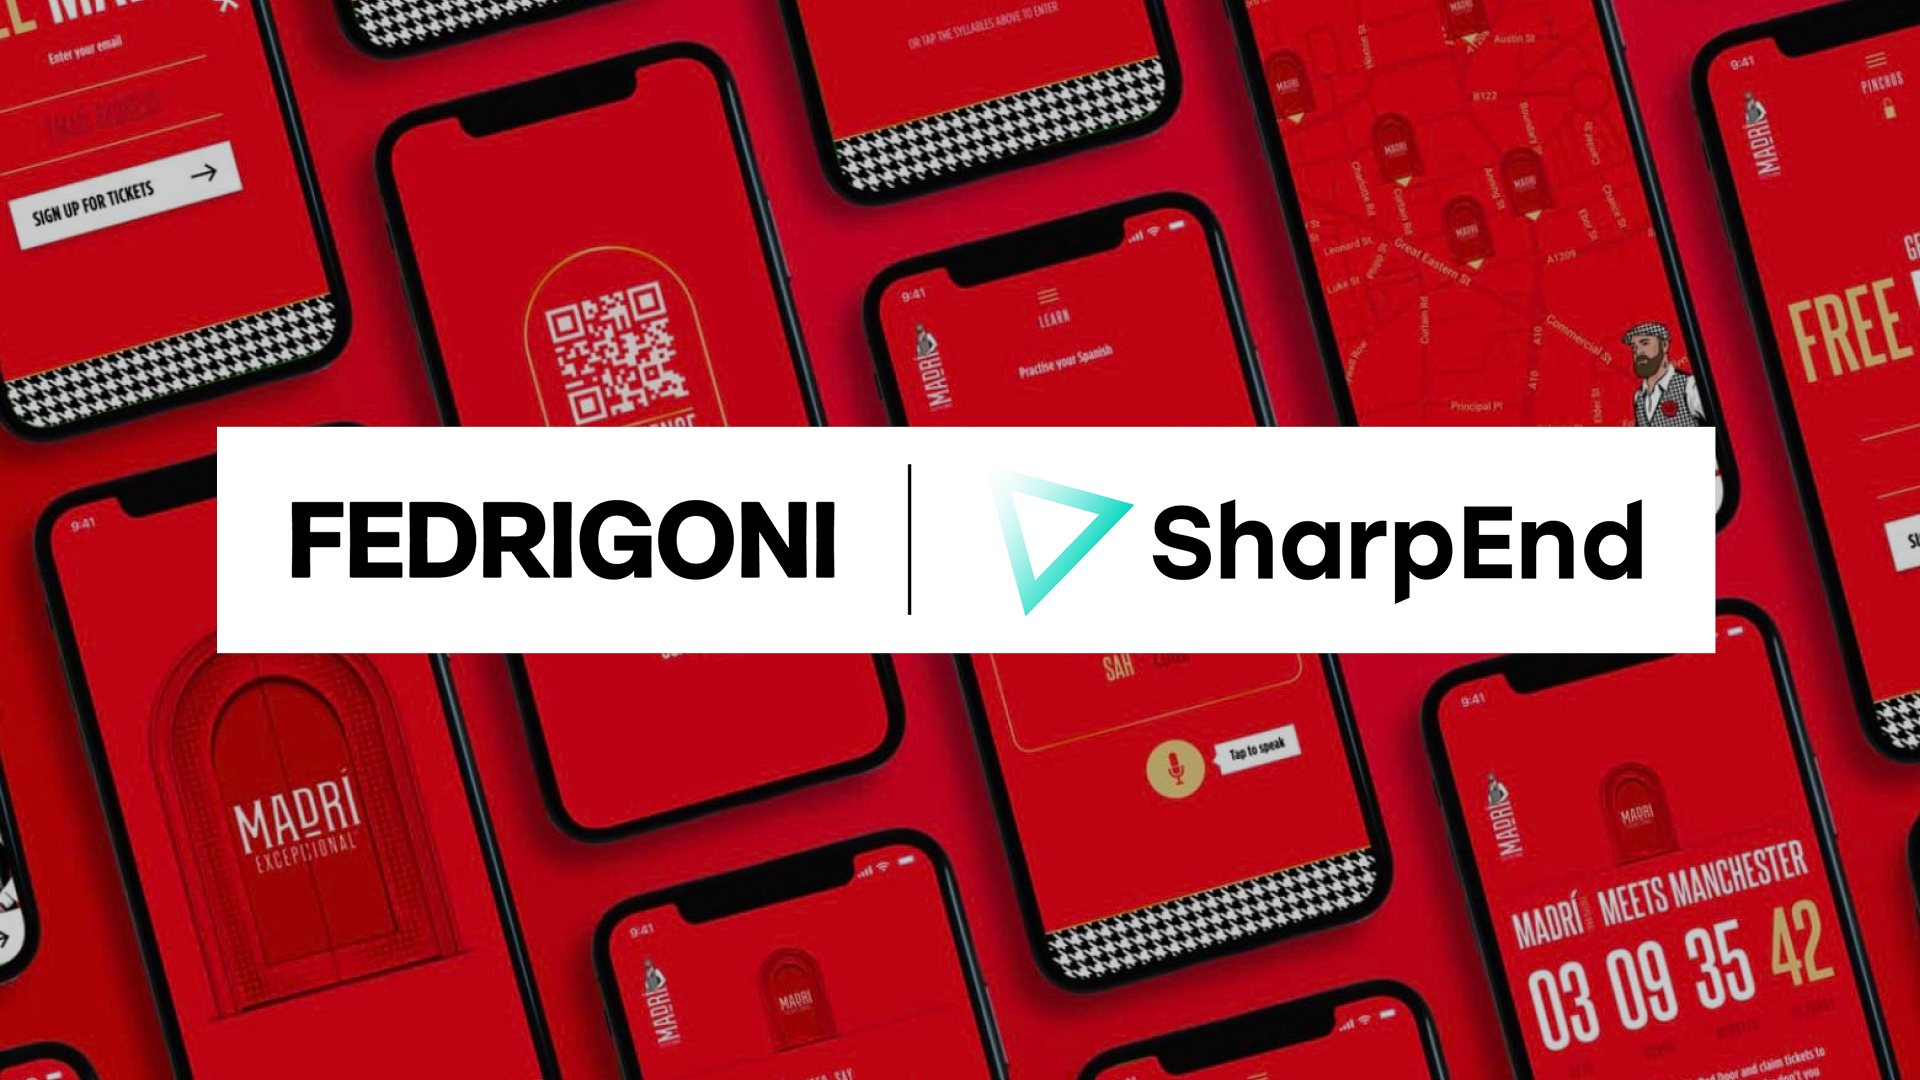 O Grupo Fedrigoni investe na SharpEnd para soluções integradas de vanguarda